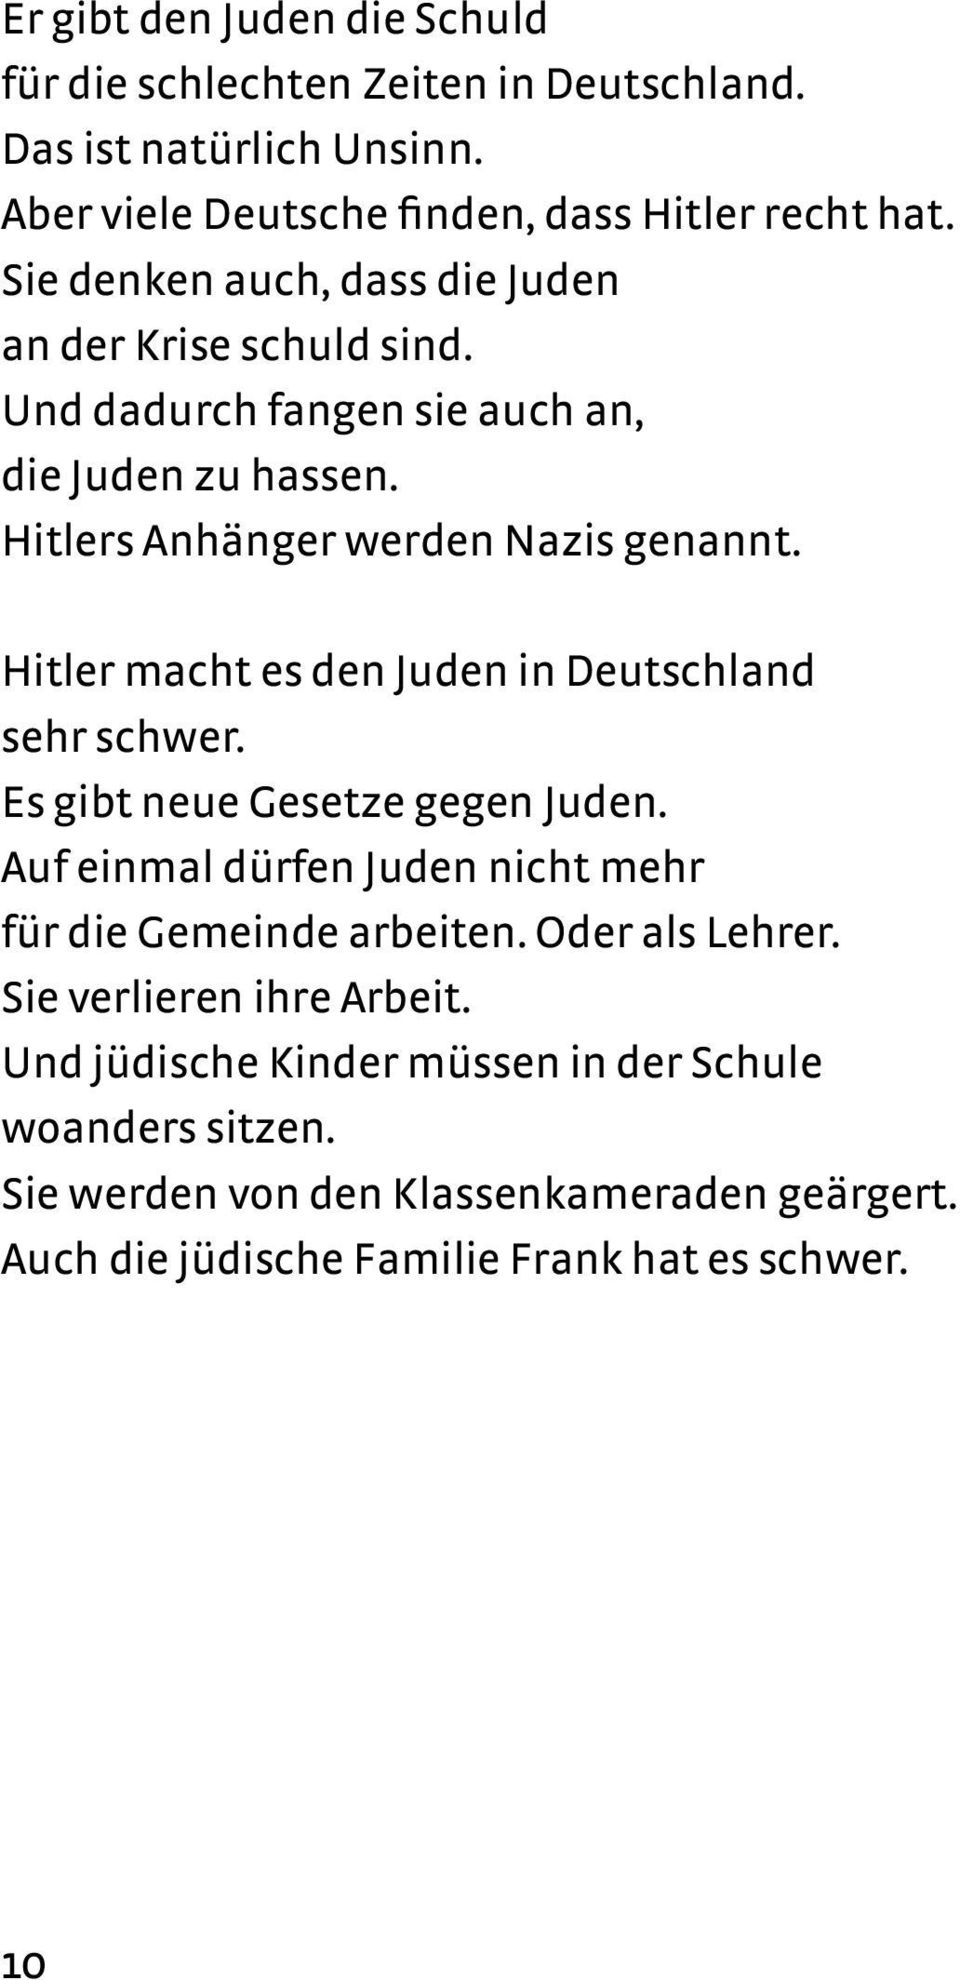 Hitler macht es den Juden in Deutschland sehr schwer. Es gibt neue Gesetze gegen Juden. Auf einmal dürfen Juden nicht mehr für die Gemeinde arbeiten.